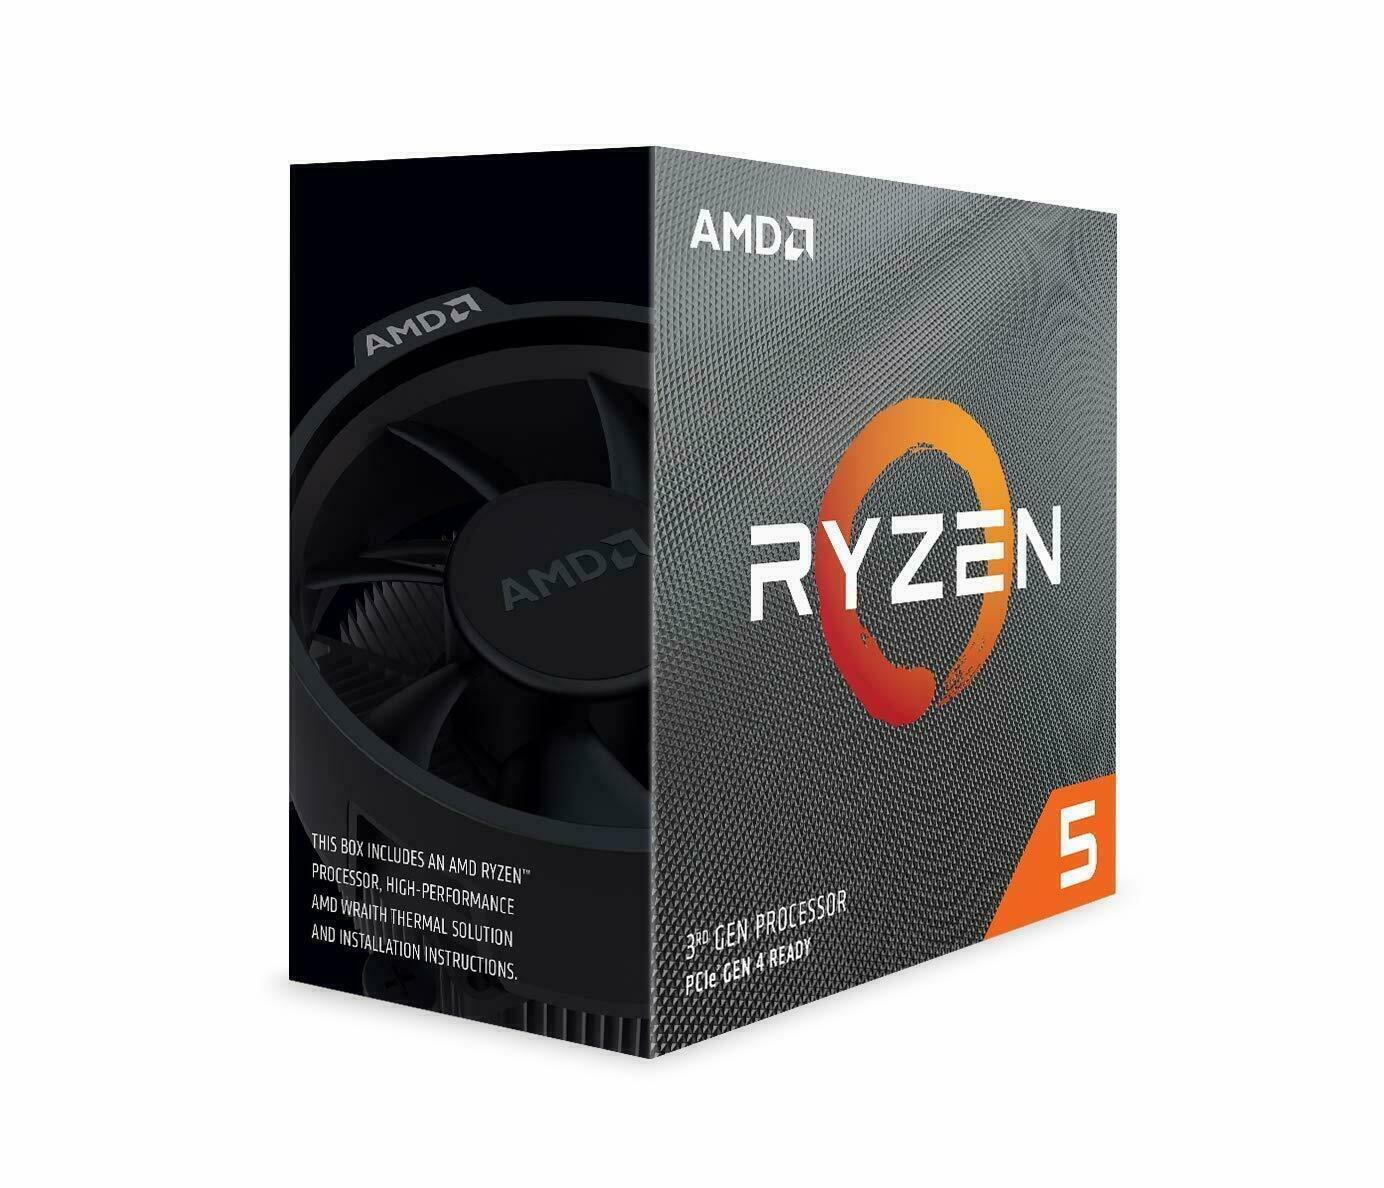 [AMD] Ryzen 5 3600 6Core 12Thread 3.6GHz 7nm PCIe4.0 65W CPU Processor